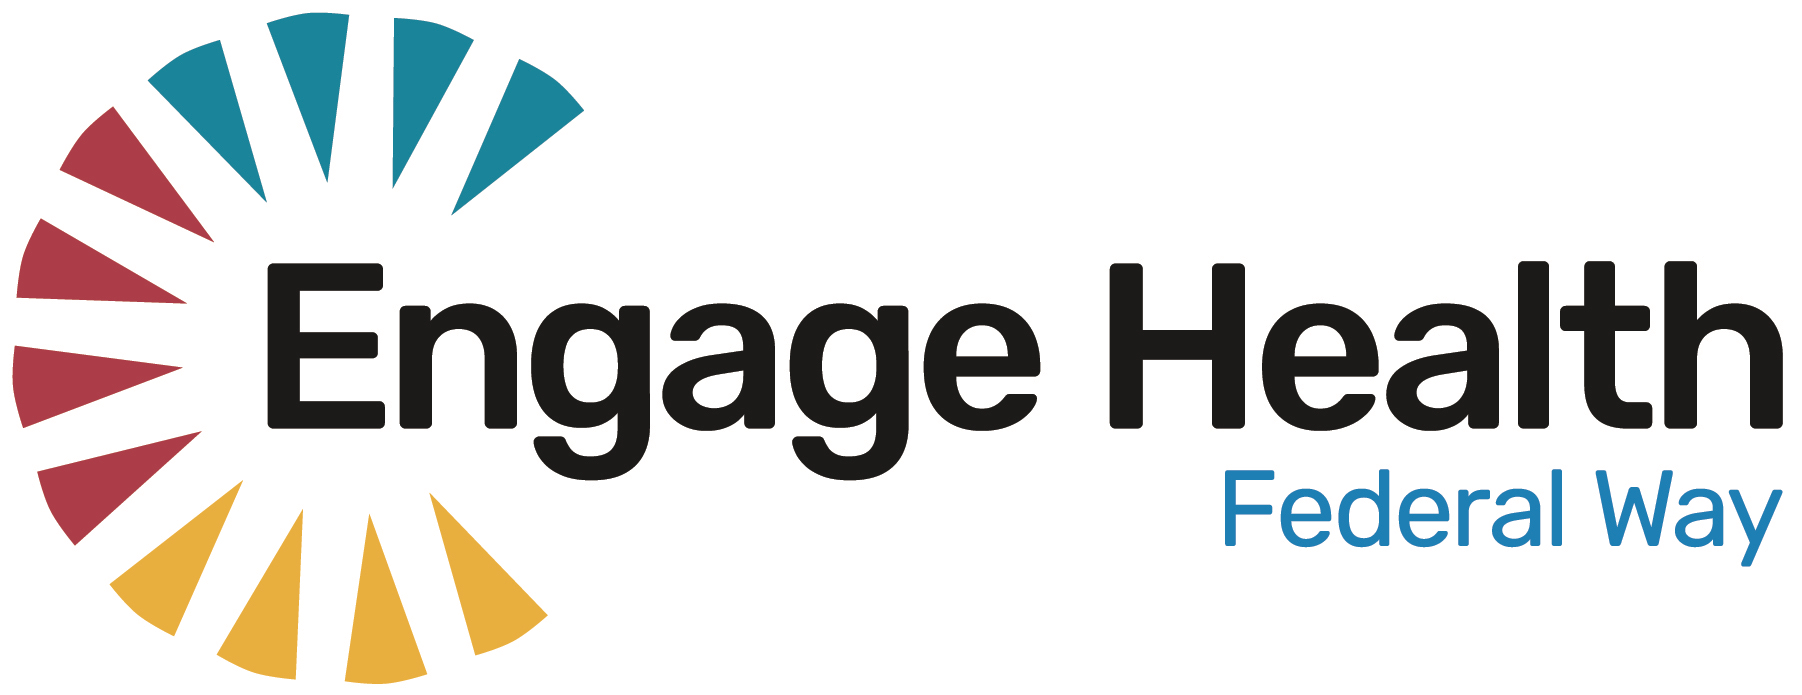 EngageHealth Federal Way logo